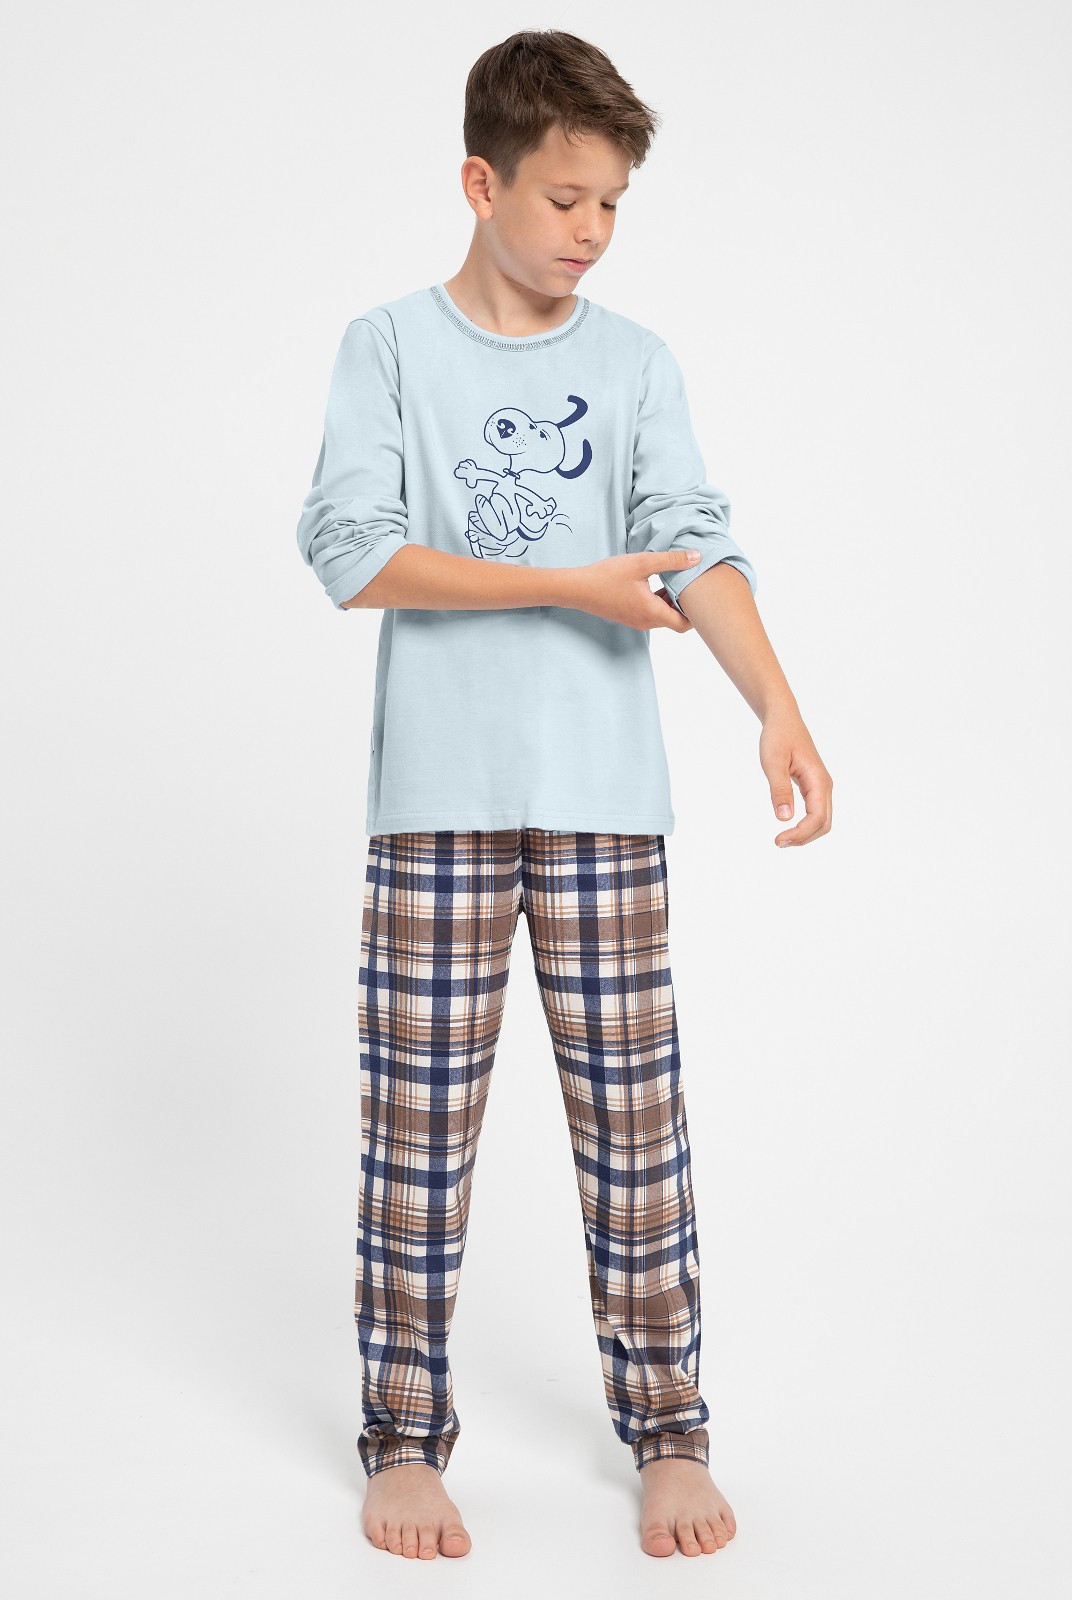 Chlapecké pyžamo Taro Parker 3089 dł/r 146-158 Z24 modrá 146